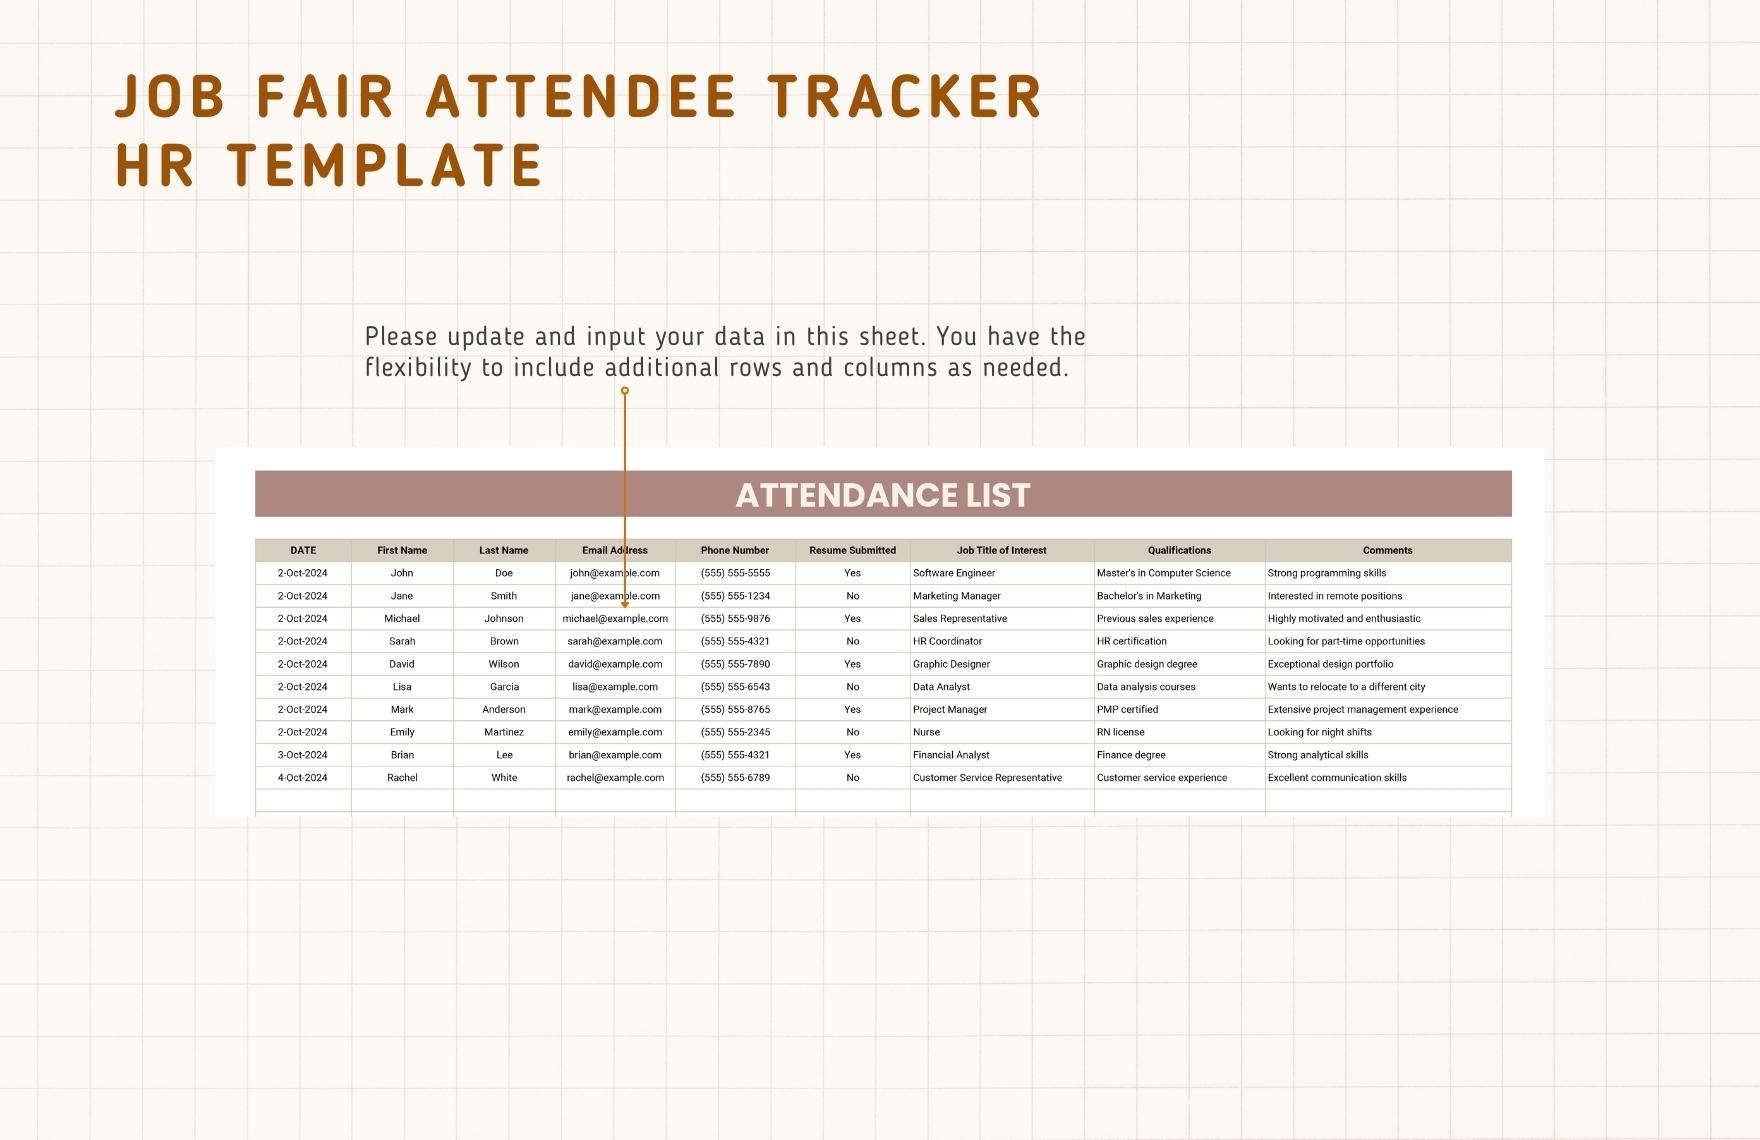 Job Fair Attendee Tracker HR Template